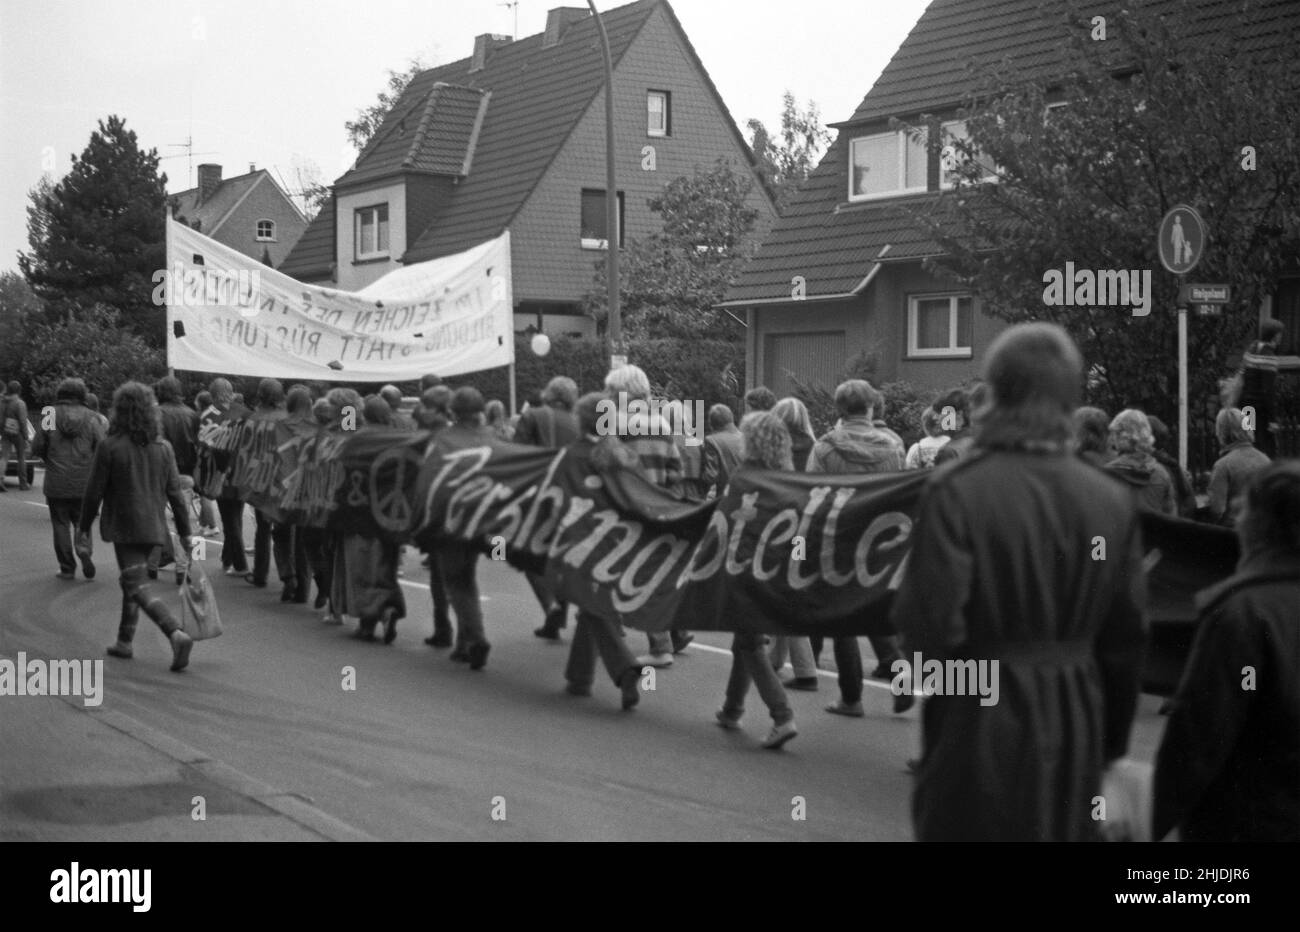 Demonstration against Pershing II missiles, October 22, 1983, Dortmund, North Rhine-Wesphalia, Germany Stock Photo